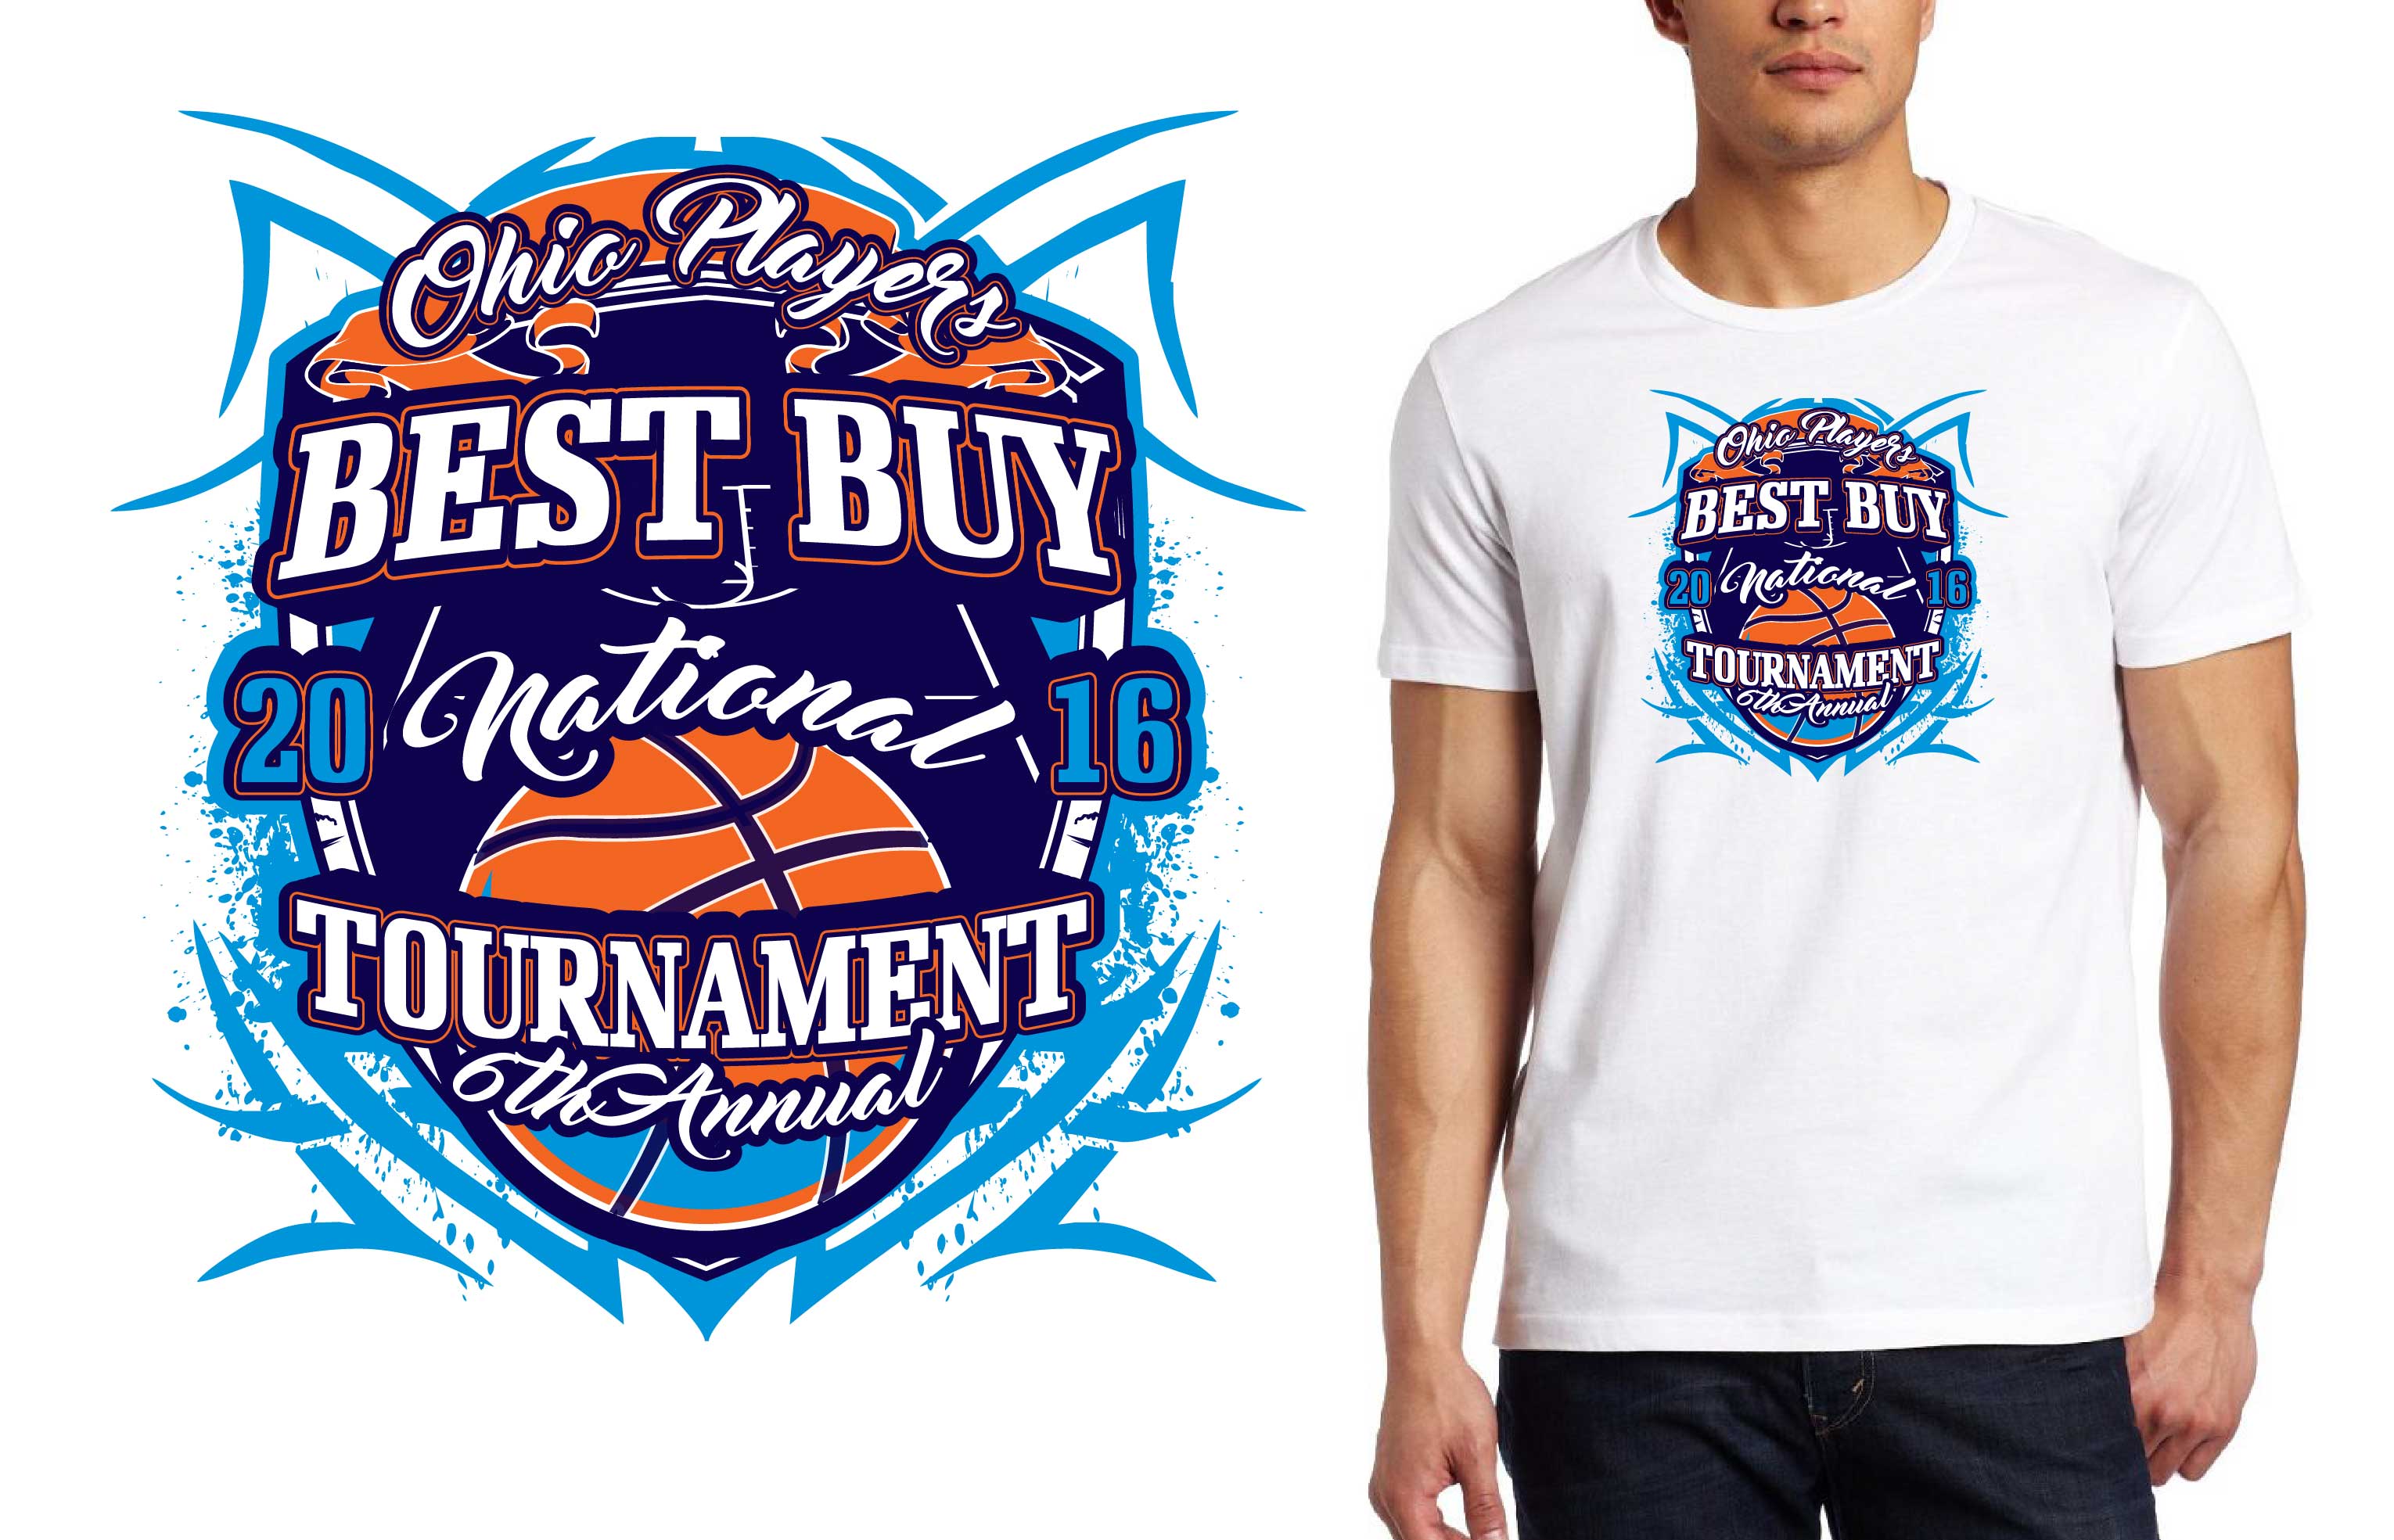 Best Basketball Logo - Best Buy National Tournament, vector artwork, logo for tshirt